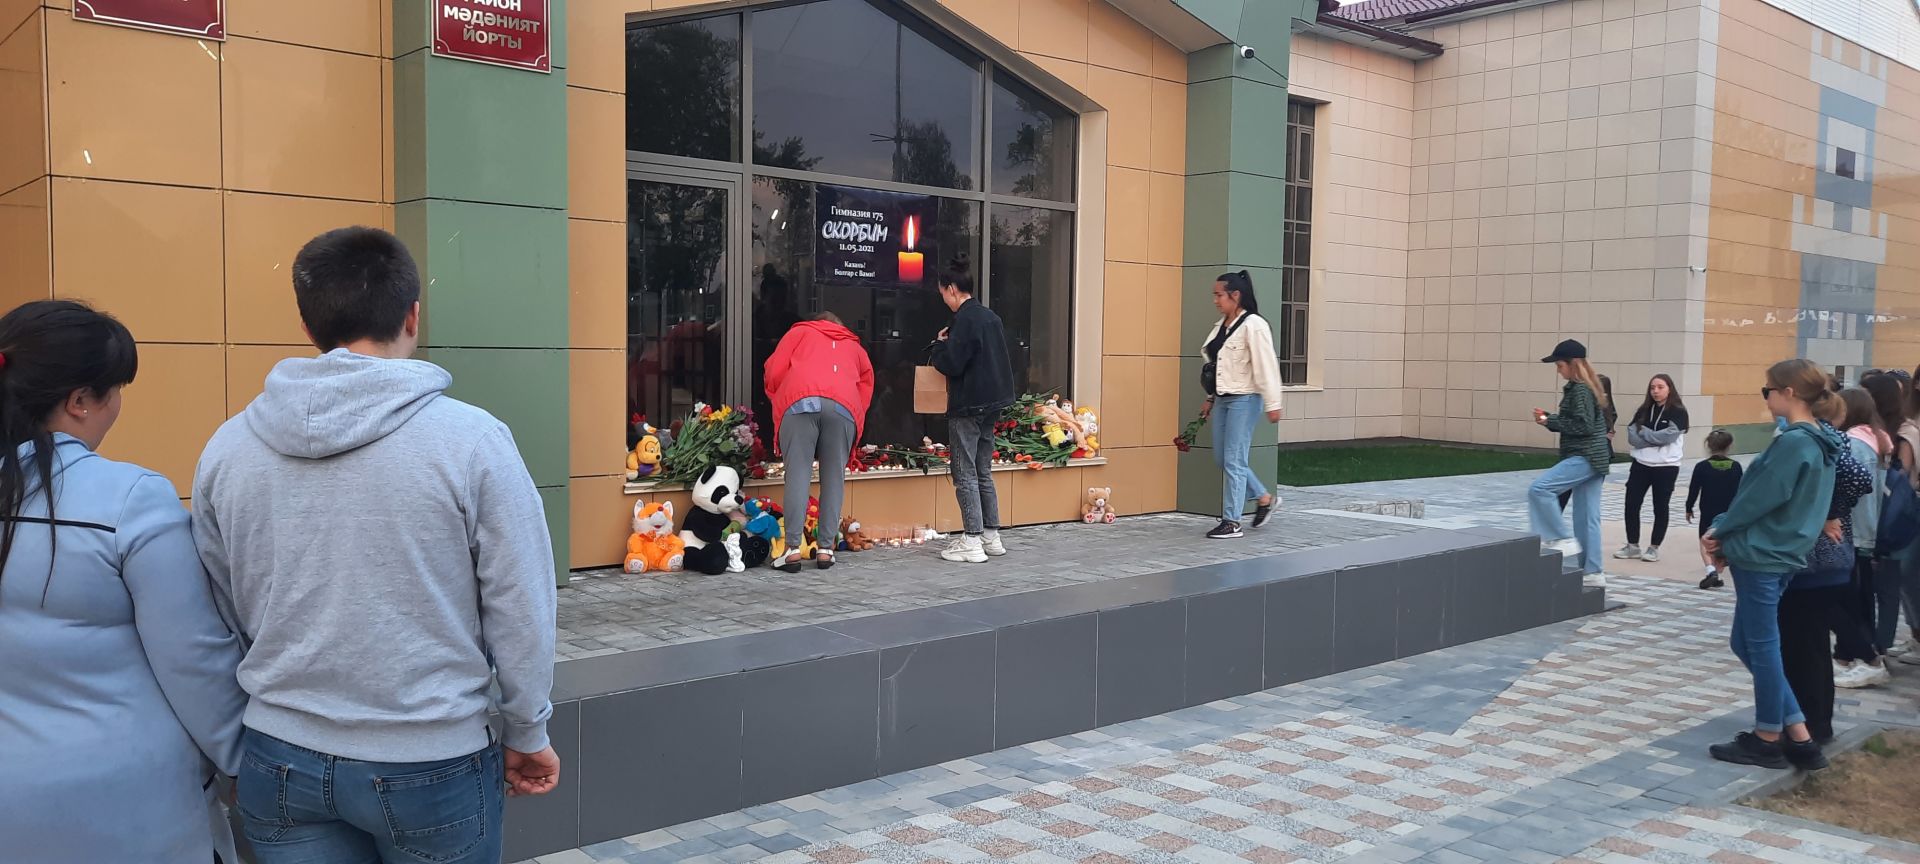 Спассцы почтили память погибших в теракте в Казани